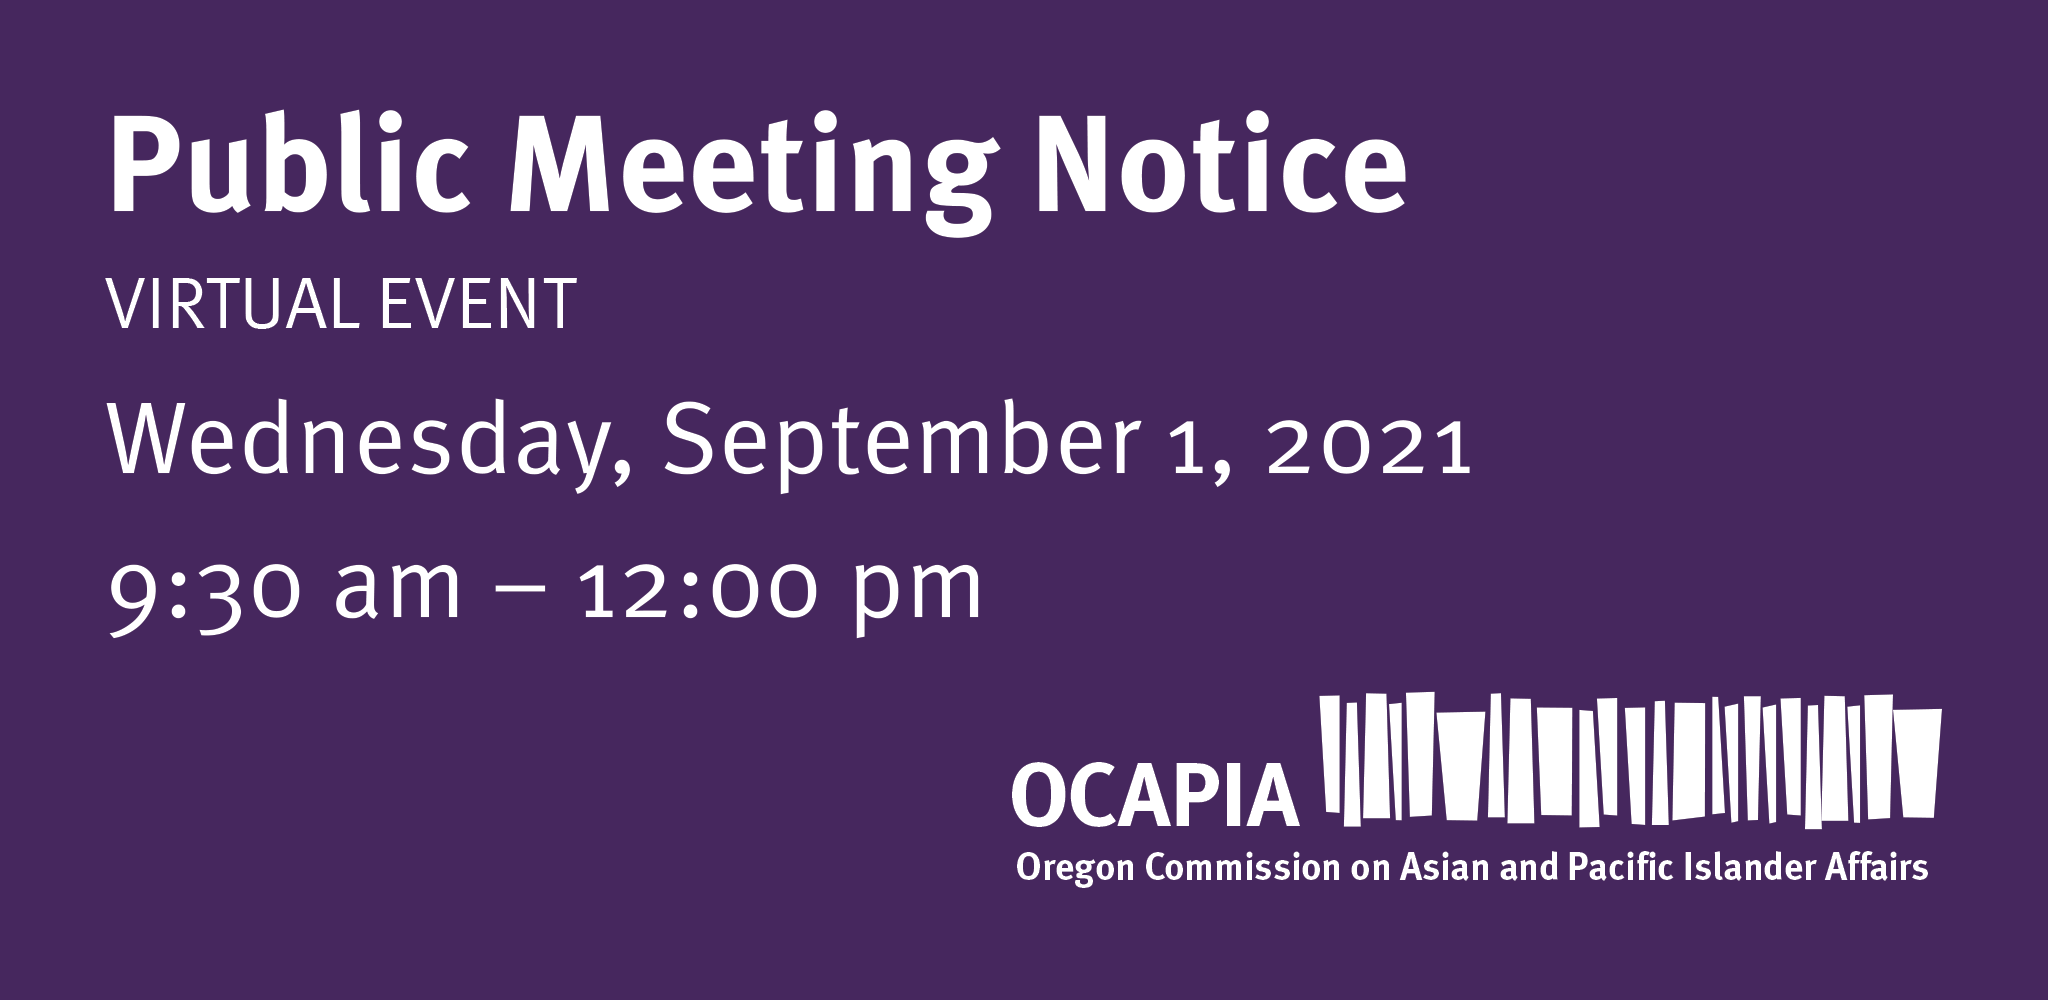 OCAPIA Regular Meeting – Wednesday, September 1, 9:30 am